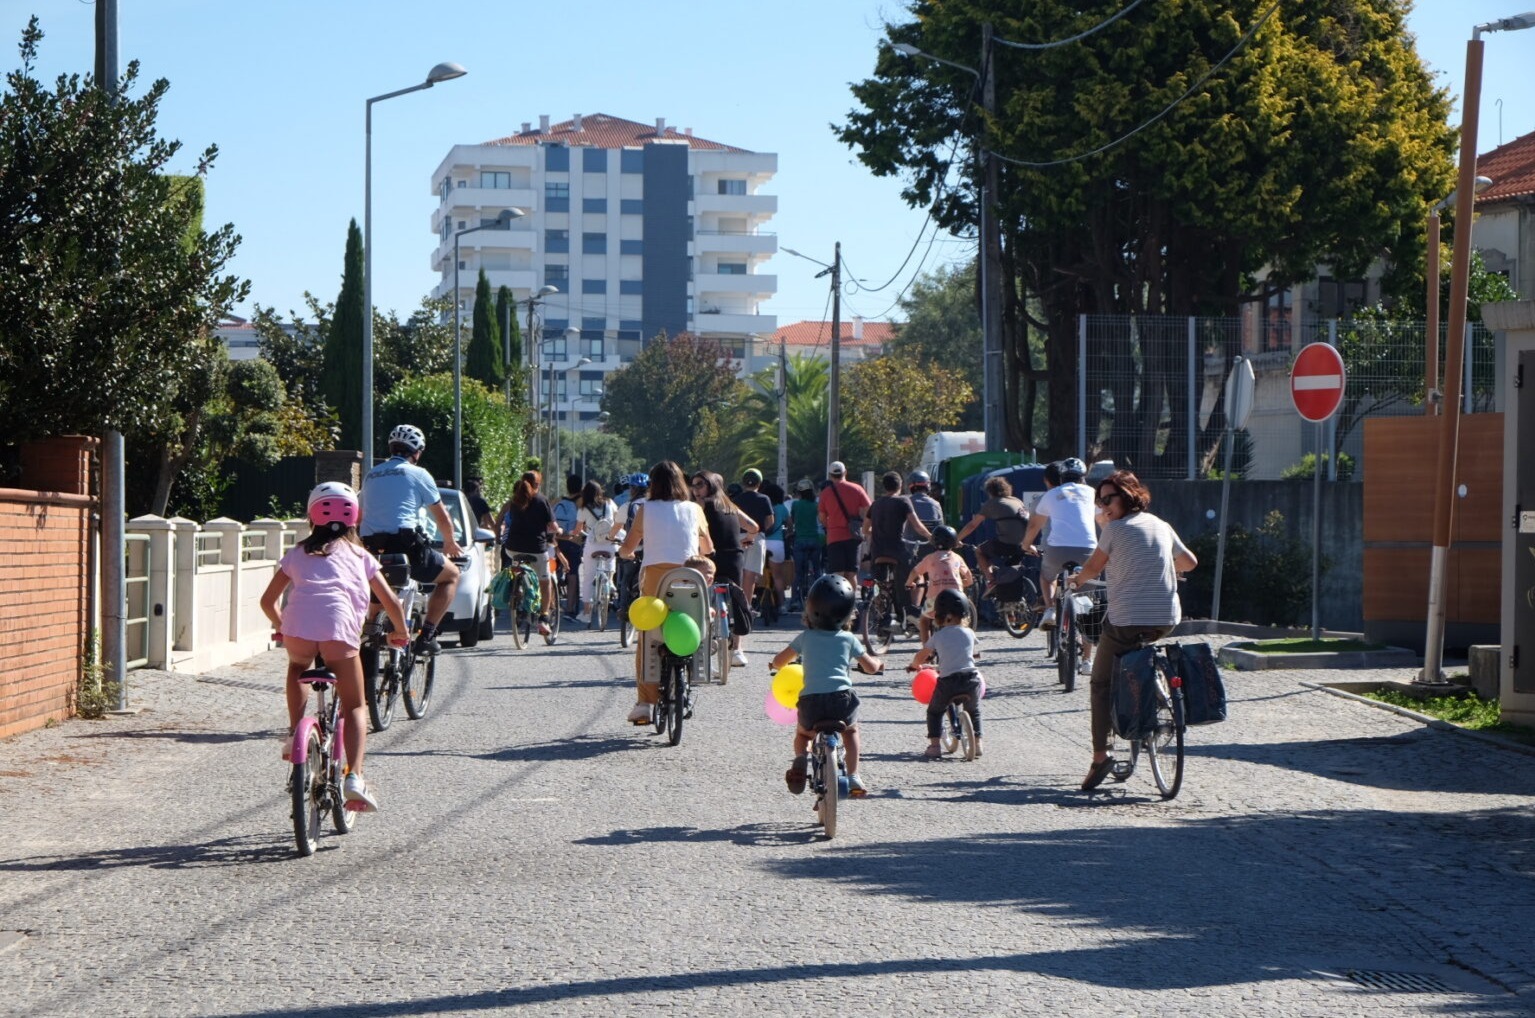 Na Figueira da Foz, há um grupo que quer fazer da rua um espaço melhor, Mobilidade Urbana